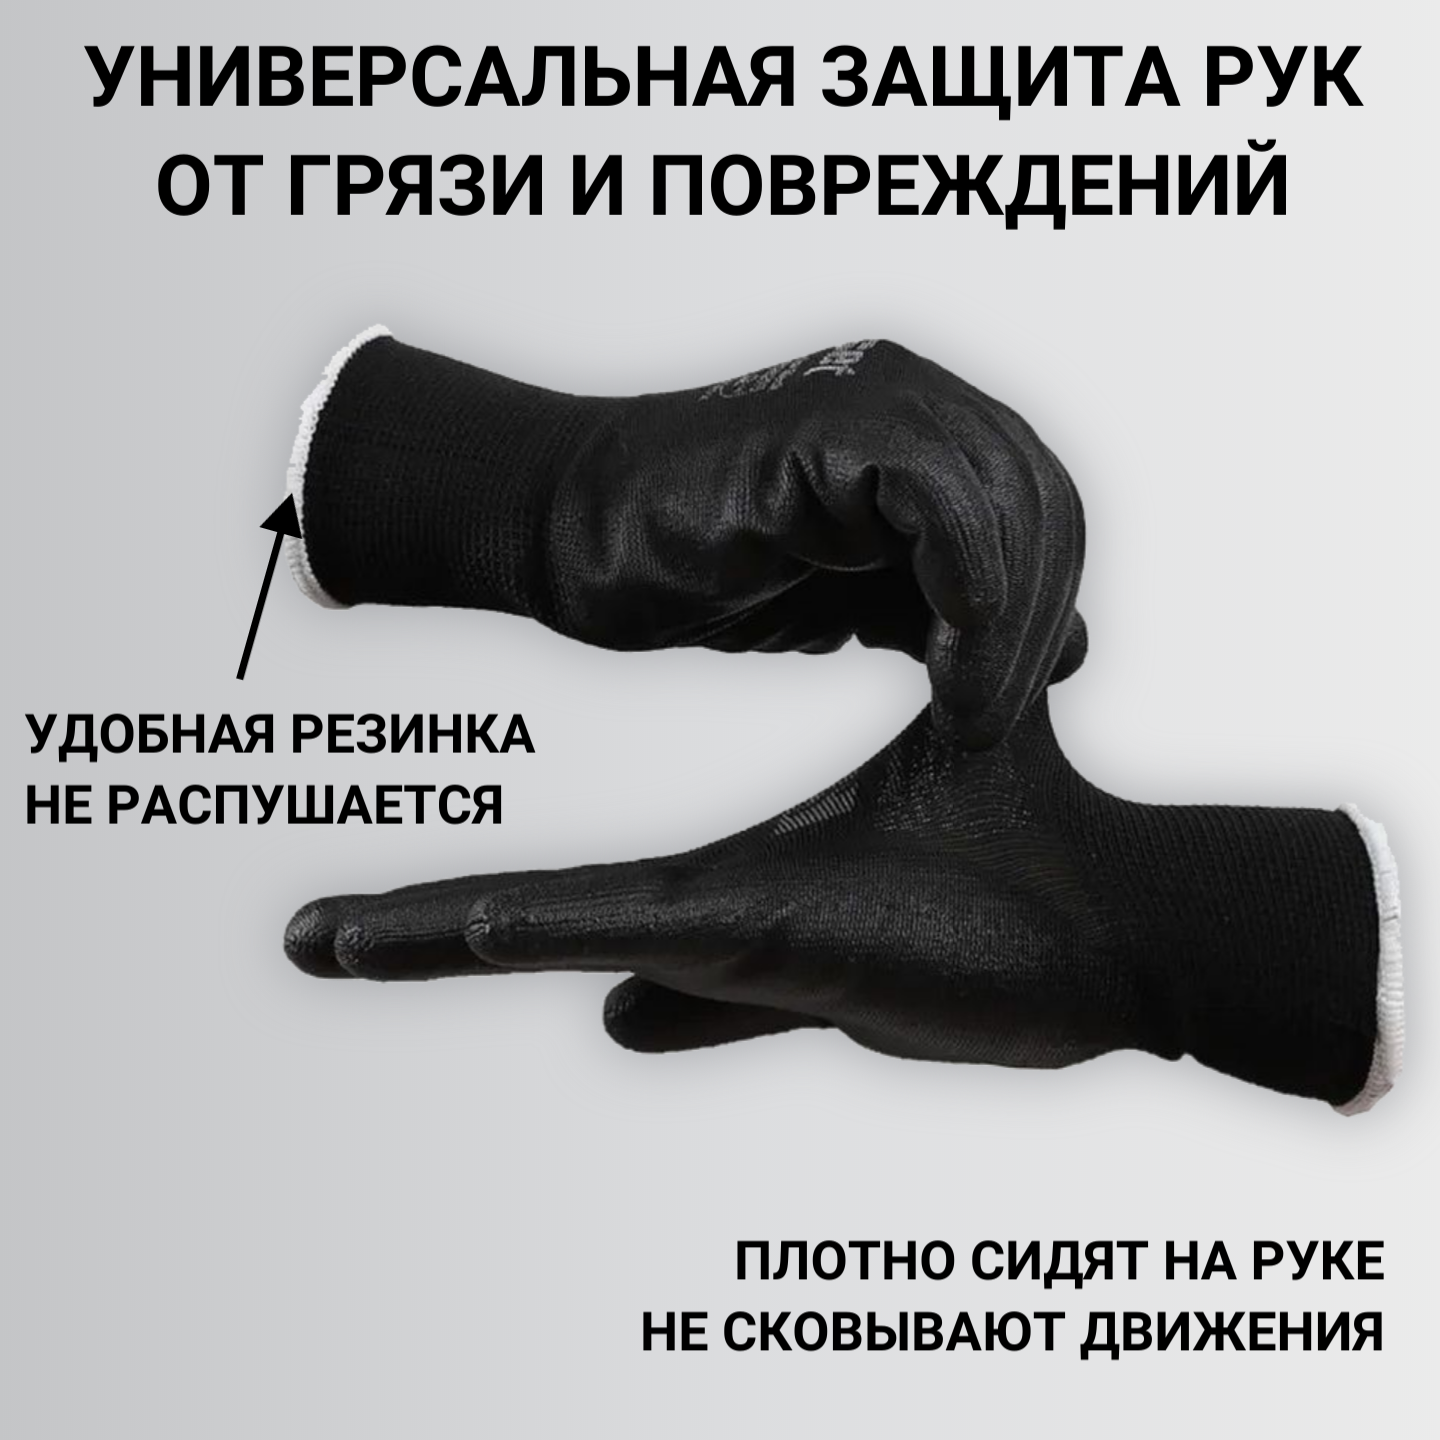 Перчатки рабочие с покрытием из полиуретана Sapset Avior Black размер S/7 - 5 пар